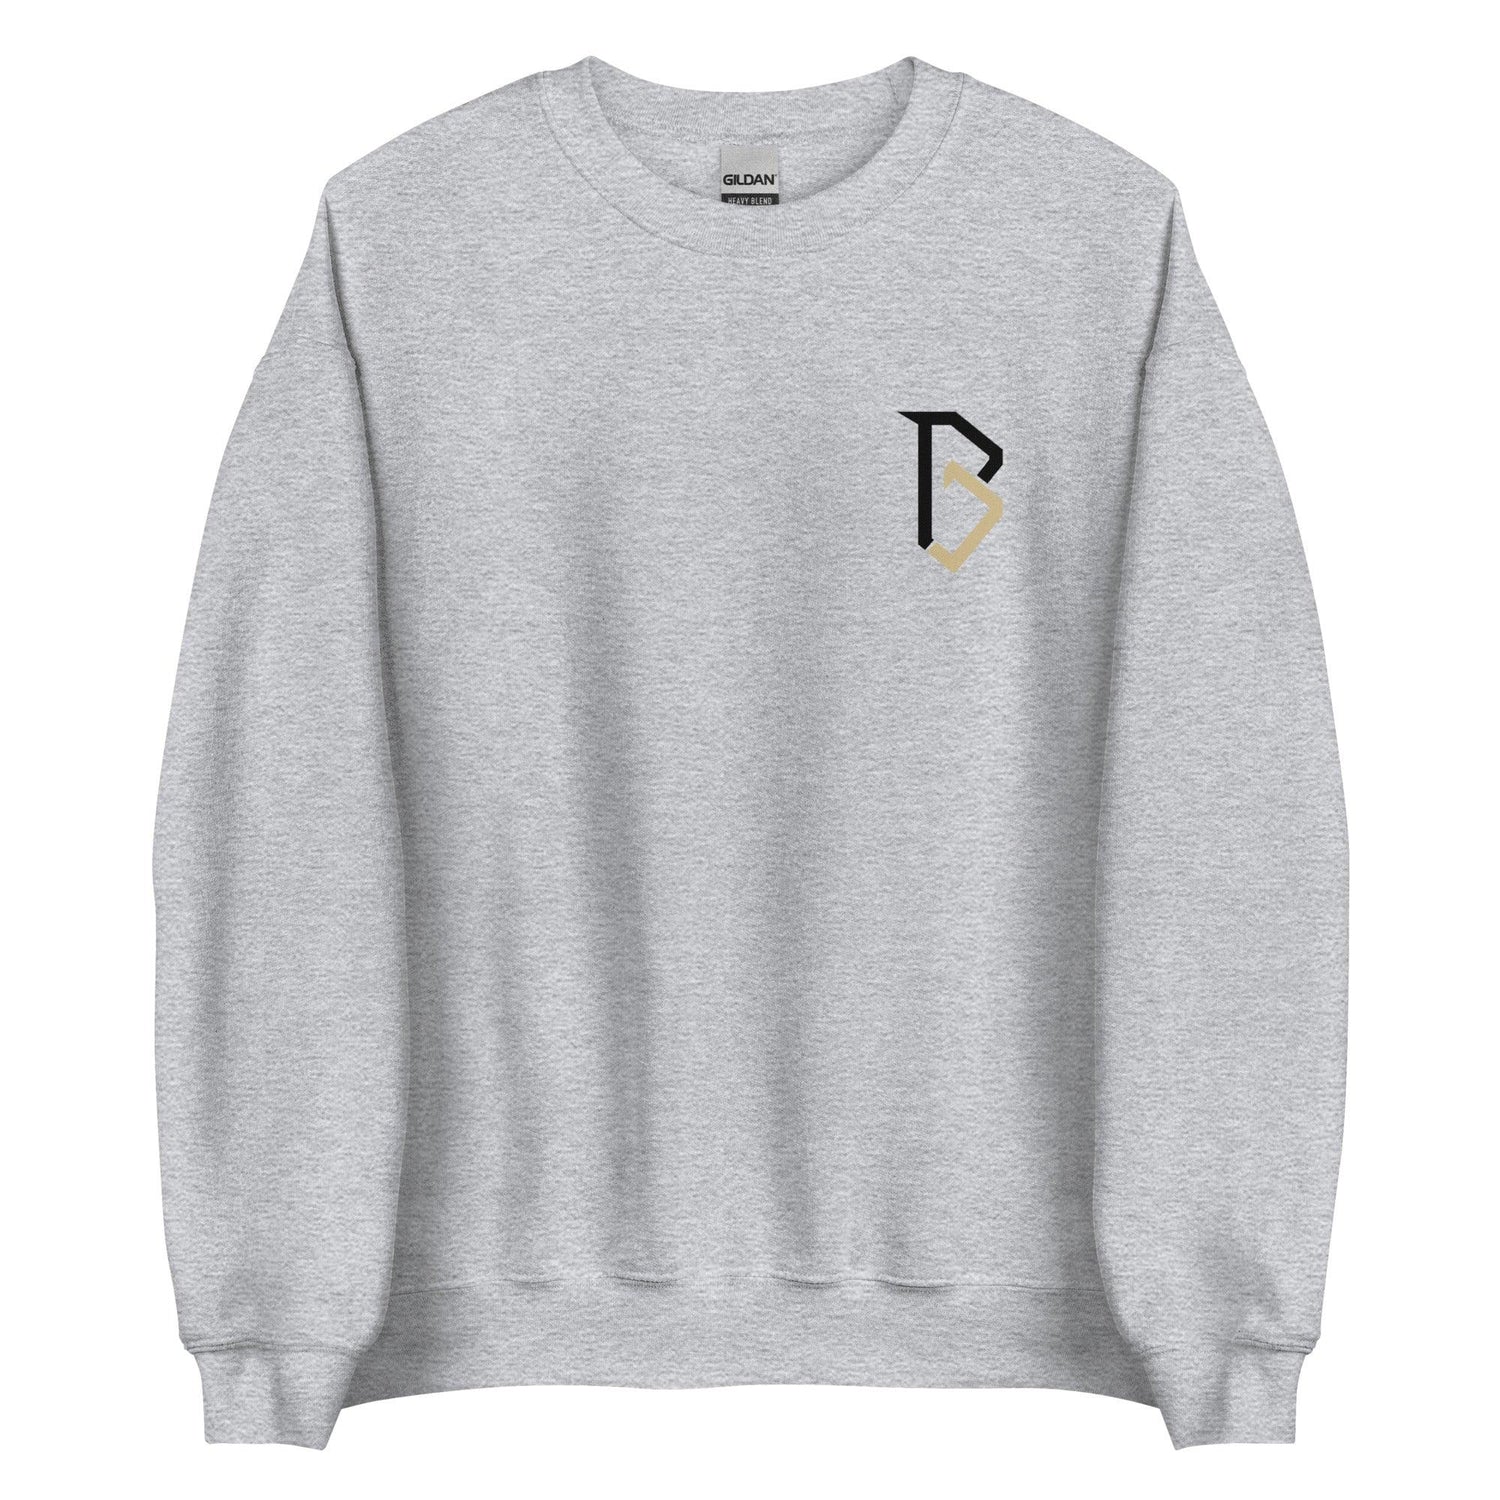 BJ Diakite "Essential" Sweatshirt - Fan Arch